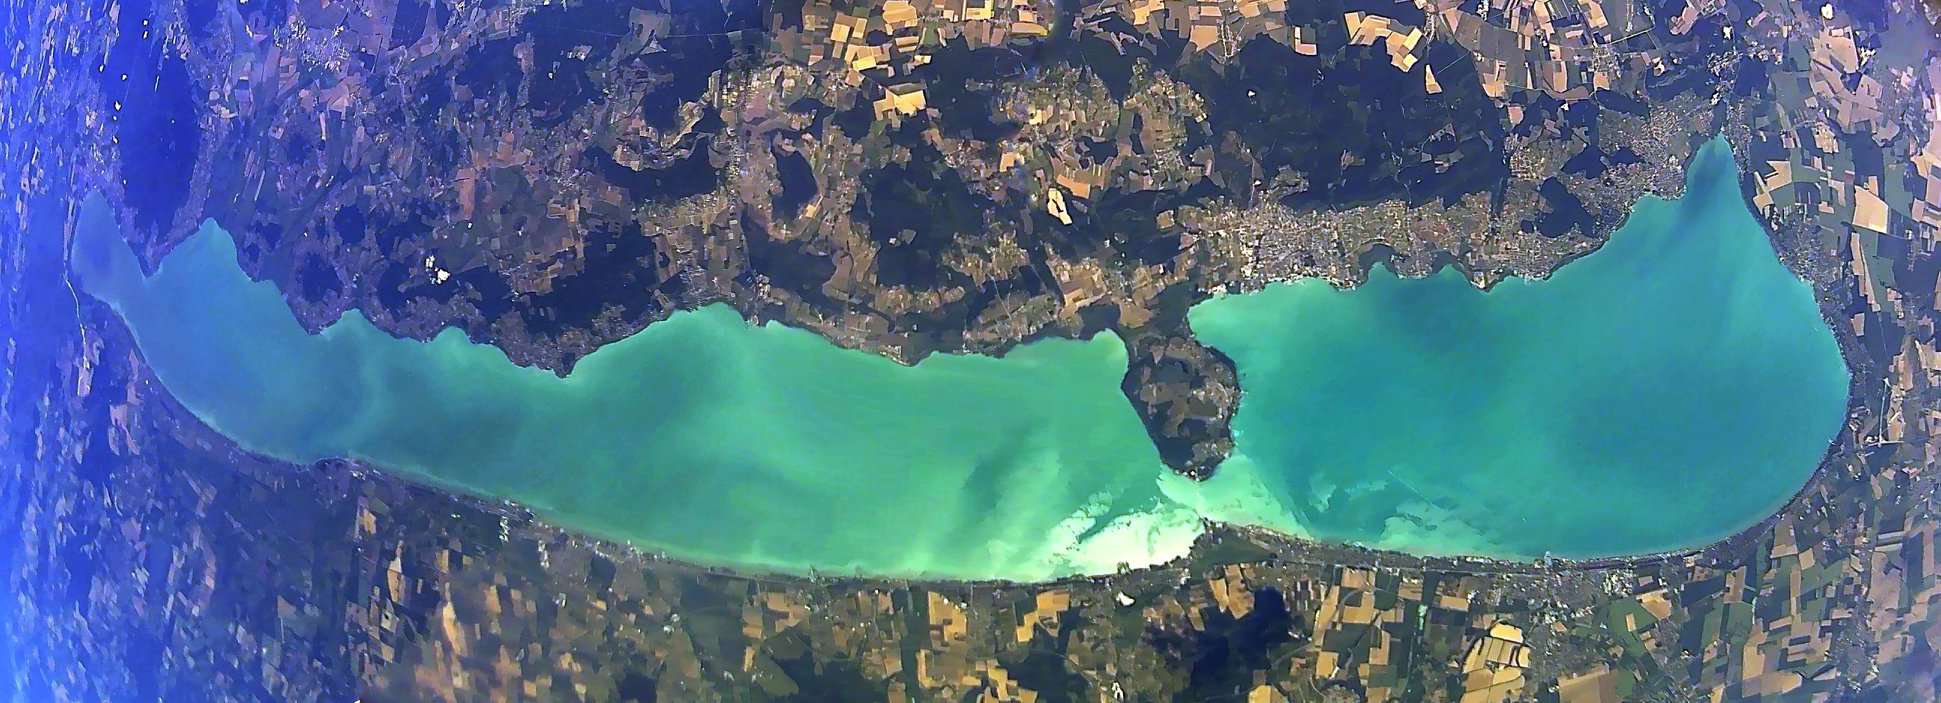 Lake Balaton from space